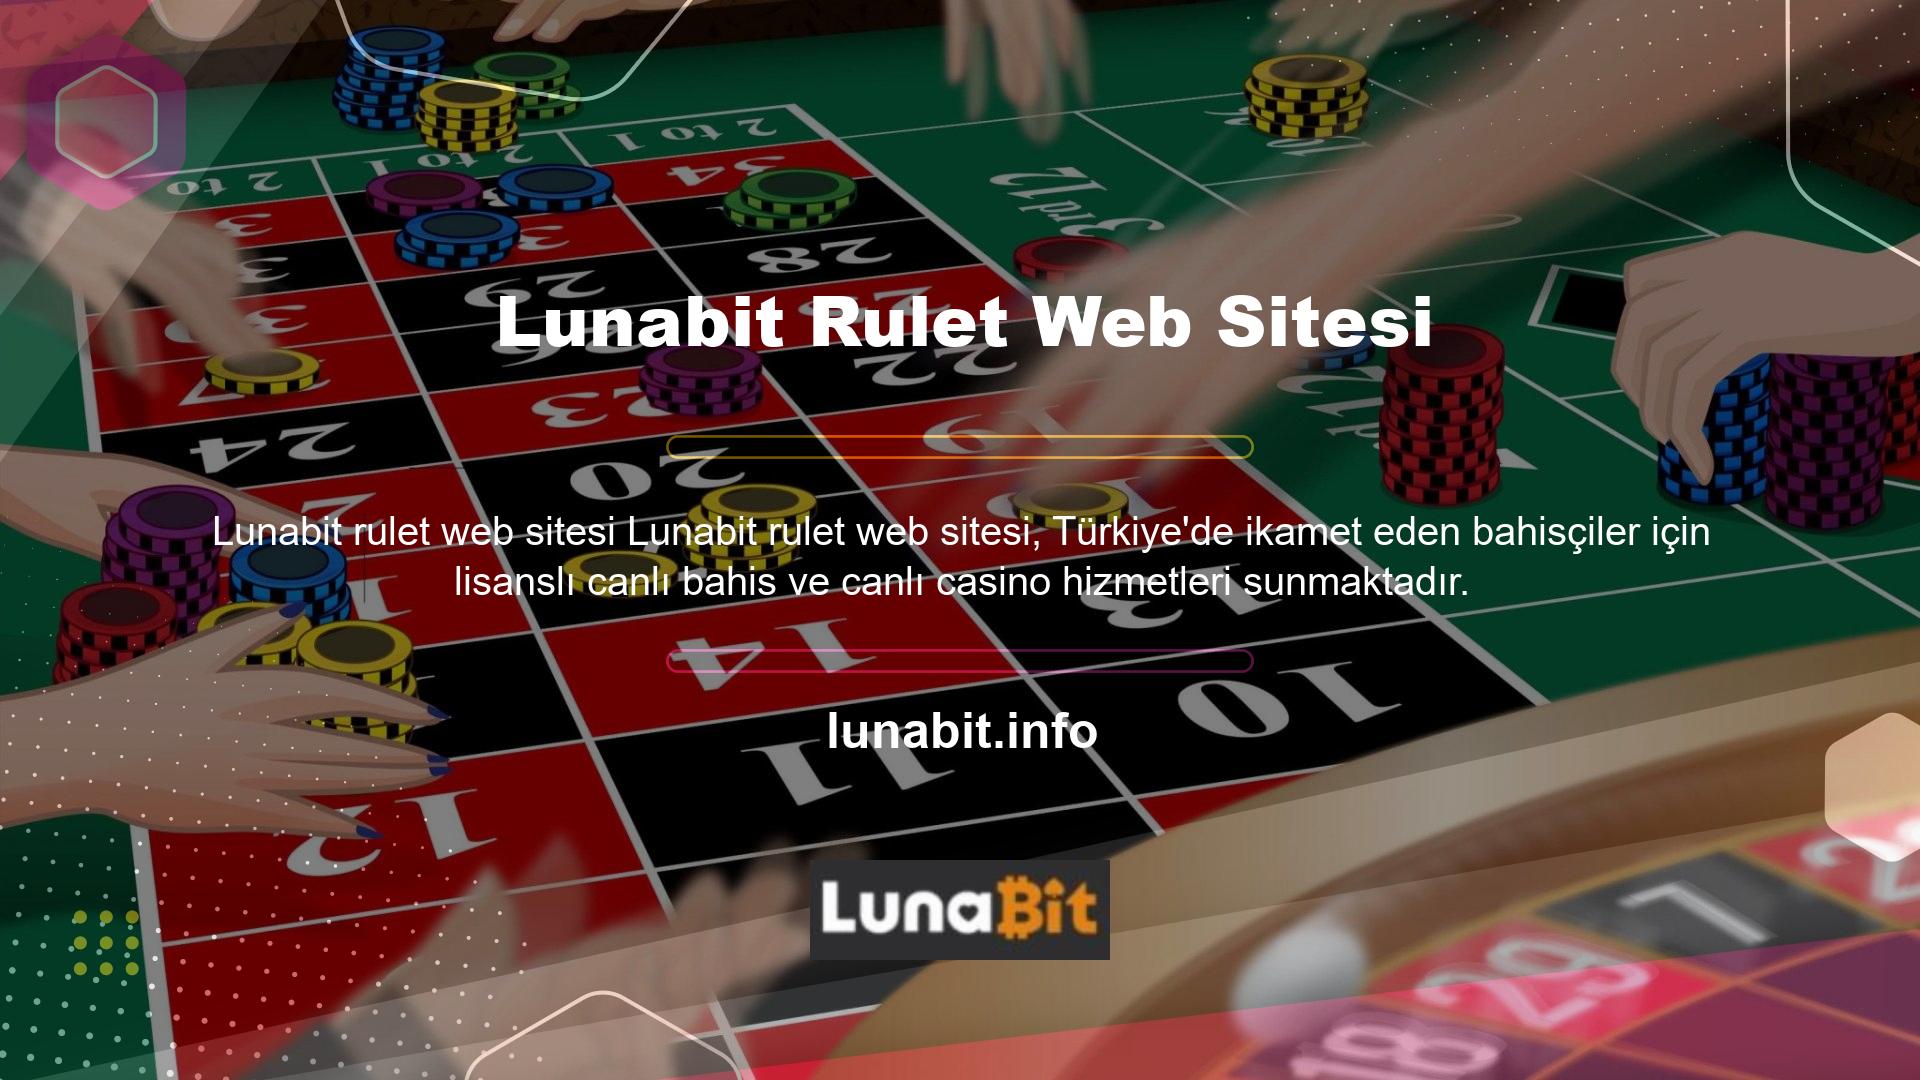 Lunabit, oyun sektöründe geniş deneyime sahip bir yönetim ekibi tarafından yönetilmektedir